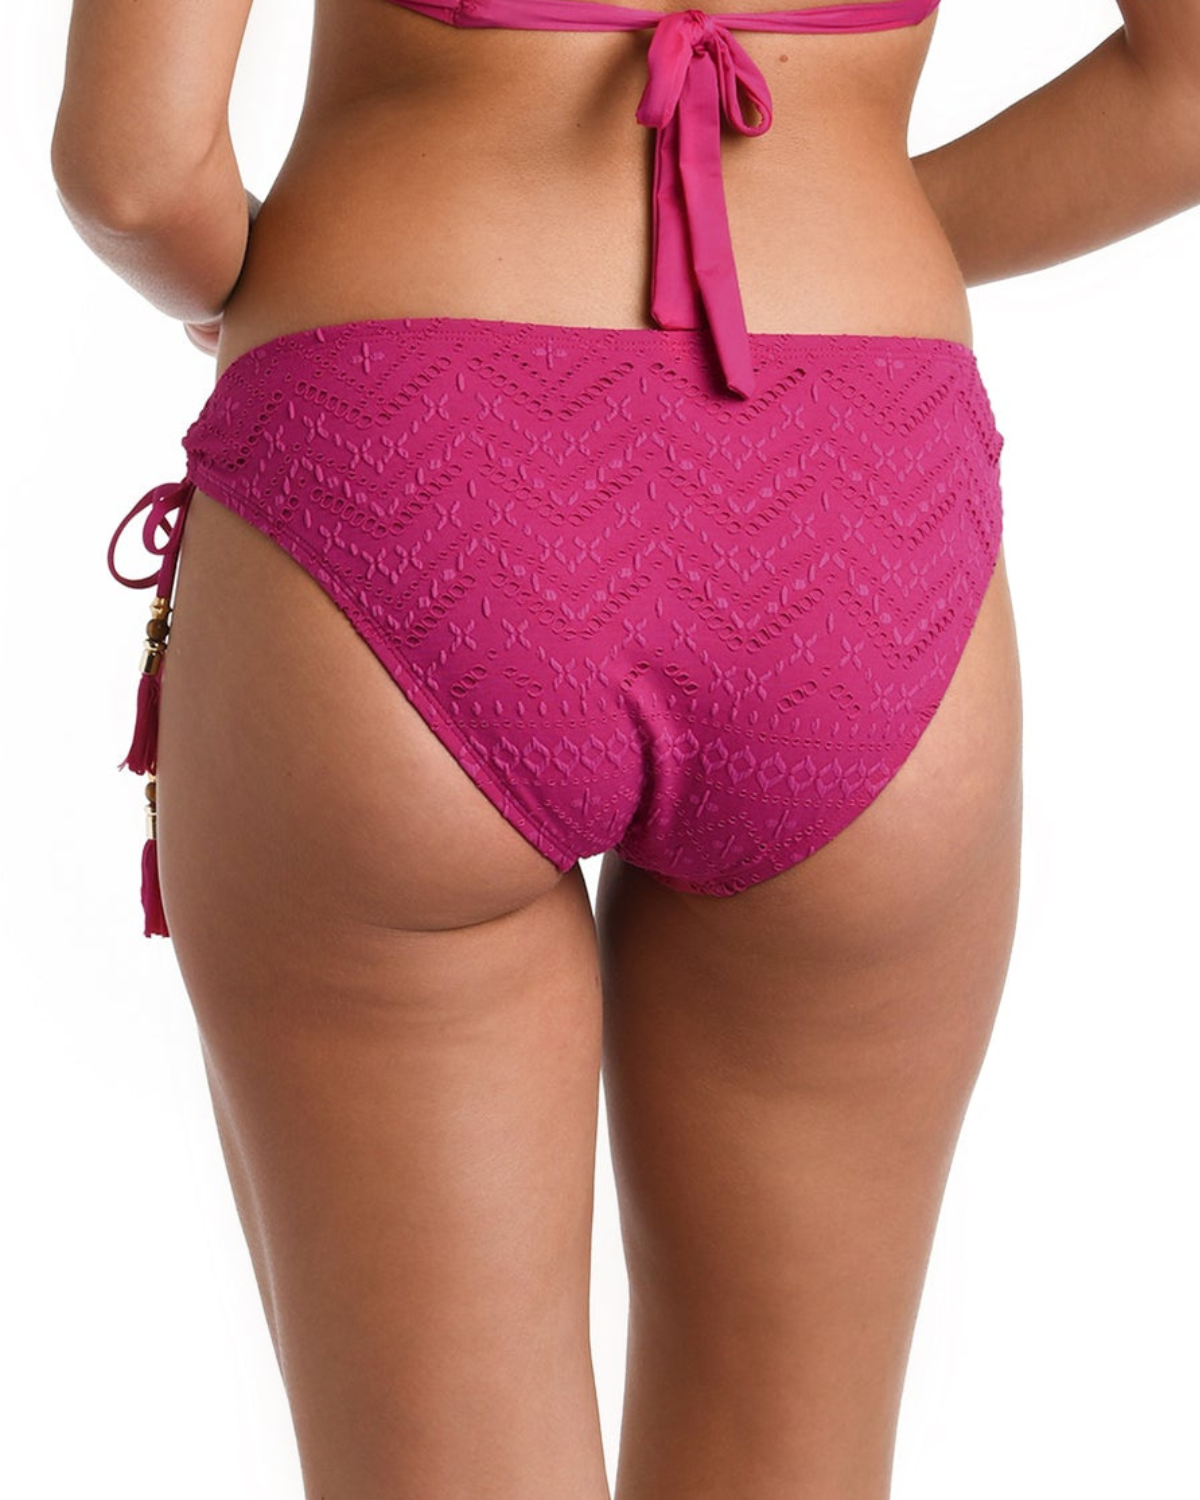 Model wearing a tie side bikini bottom in pink